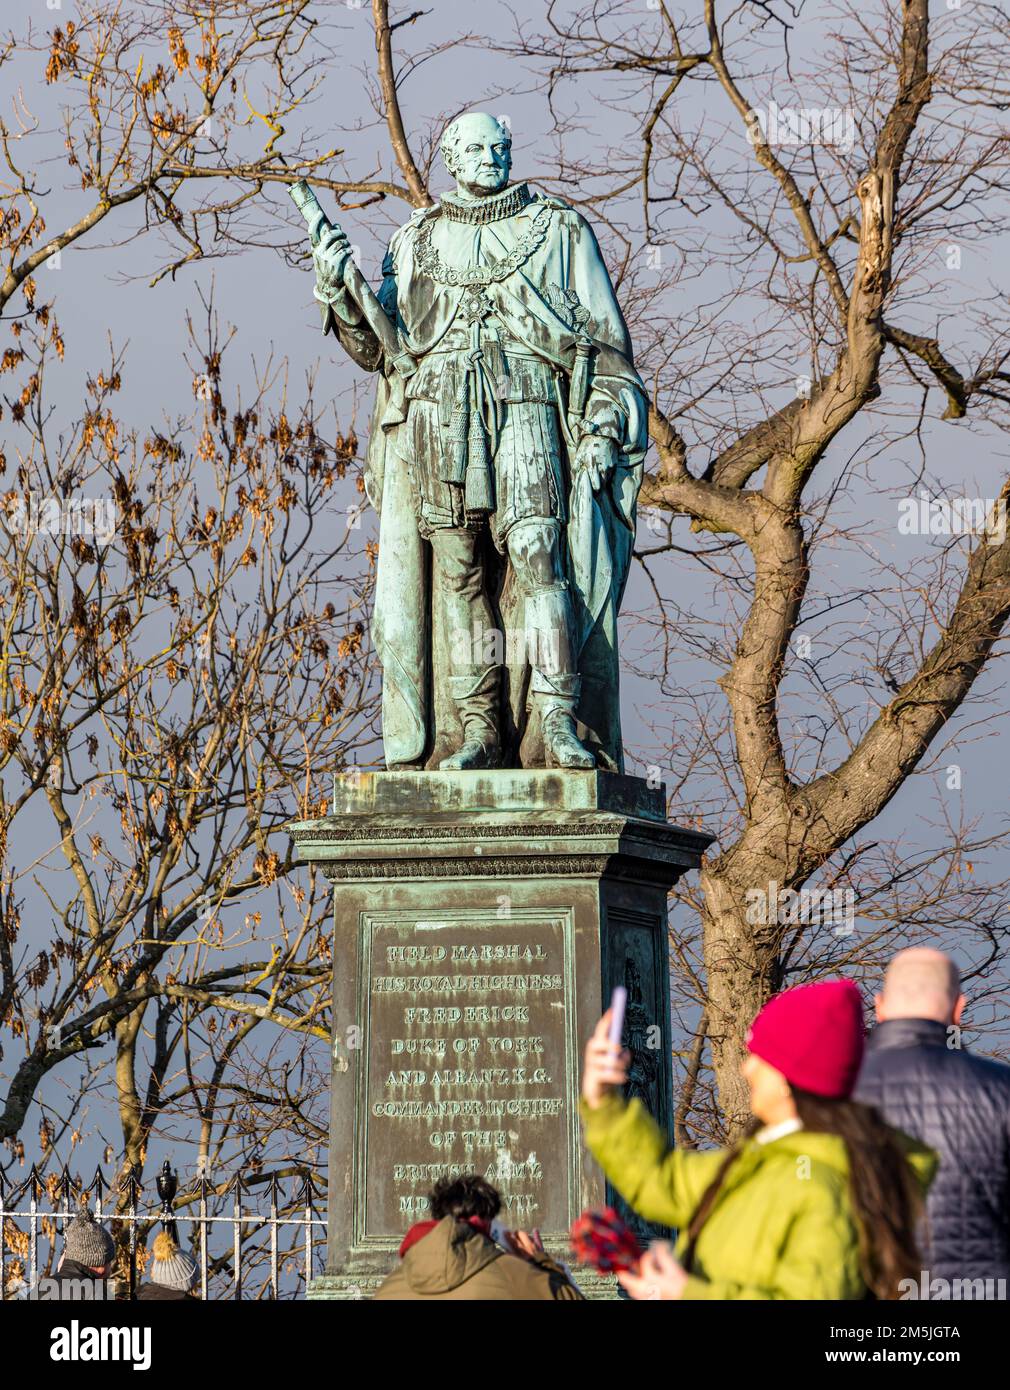 Statue en bronze du Prince Marshall de champ Frederick Duke of York et Albany, esplanade du château, Édimbourg, Écosse, Royaume-Uni Banque D'Images